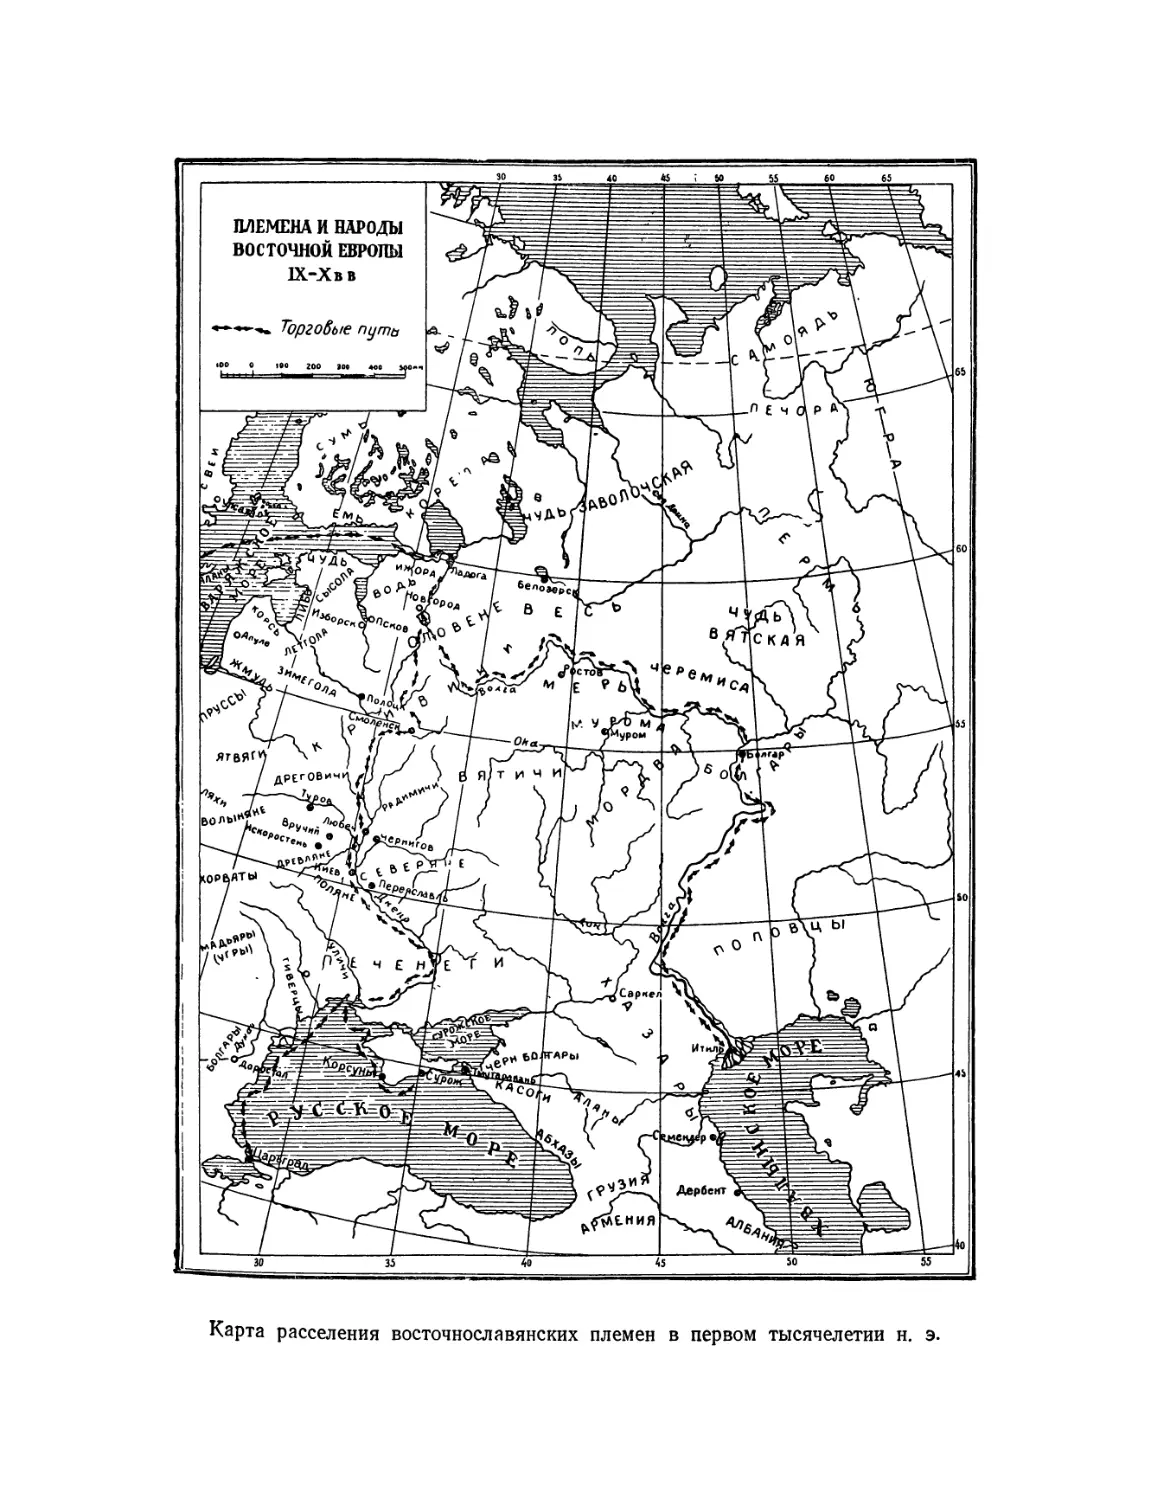 Вклейка. Карта расселения восточнославянских племен в первом тысячелетии н. э.